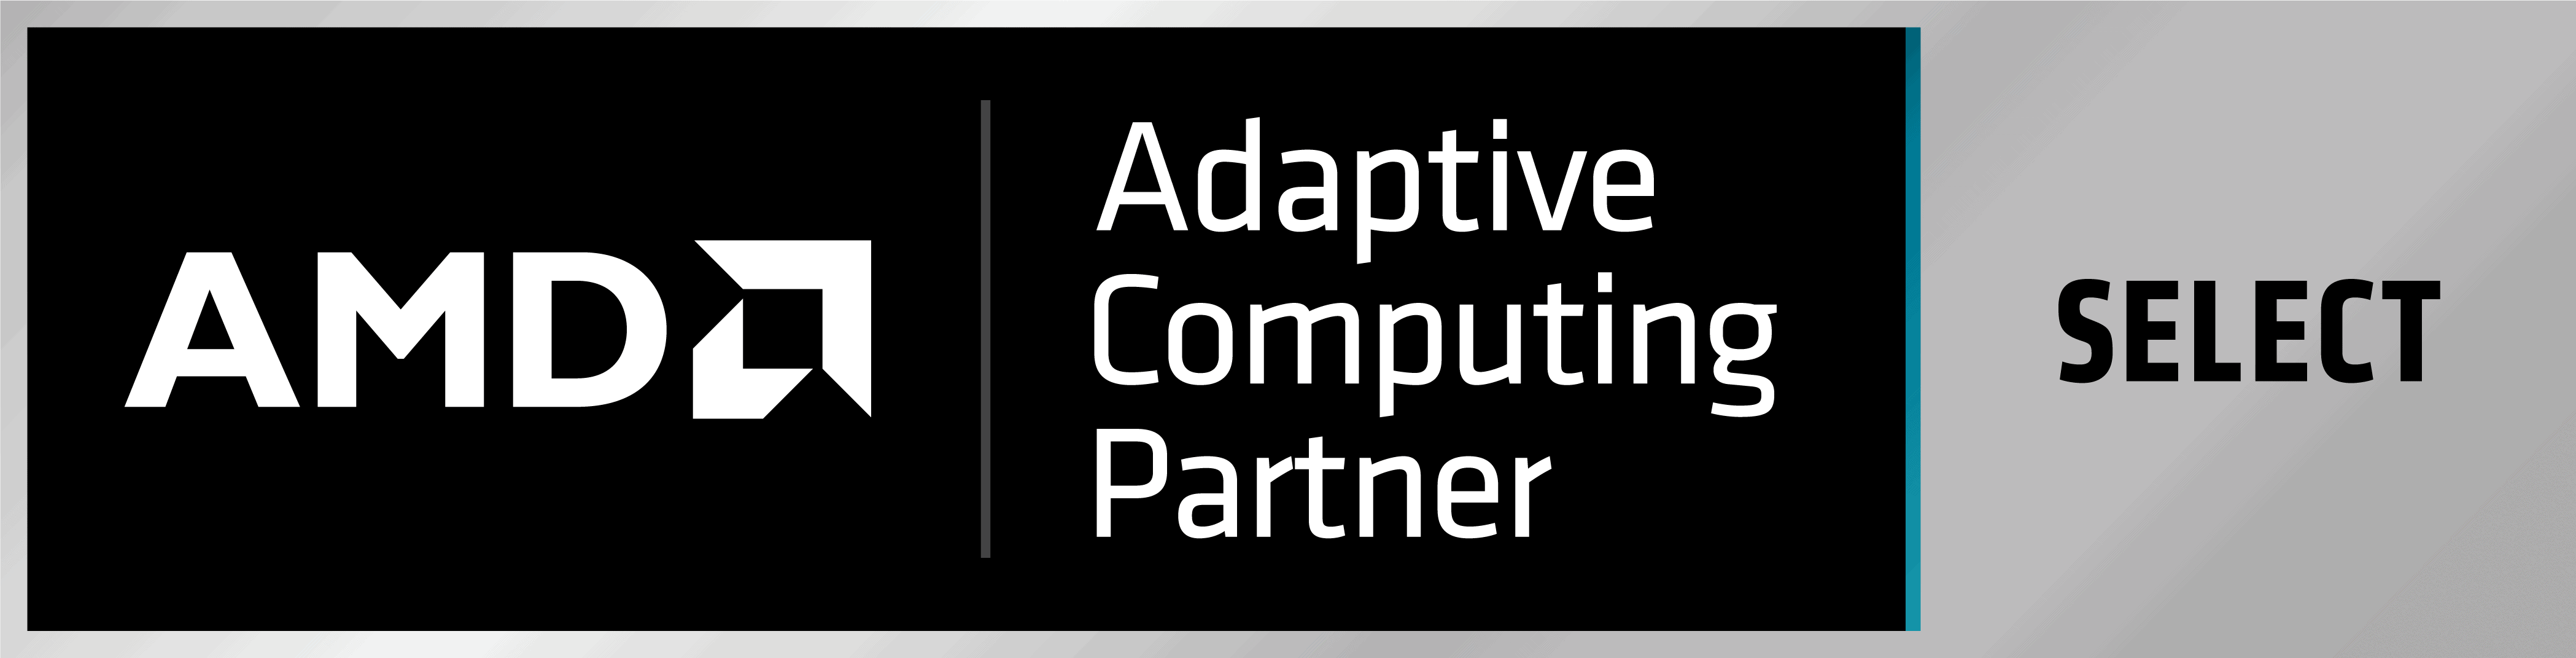 221958652-A_AMD_Adaptive_Computing_Partner_Badge_Select_RGB